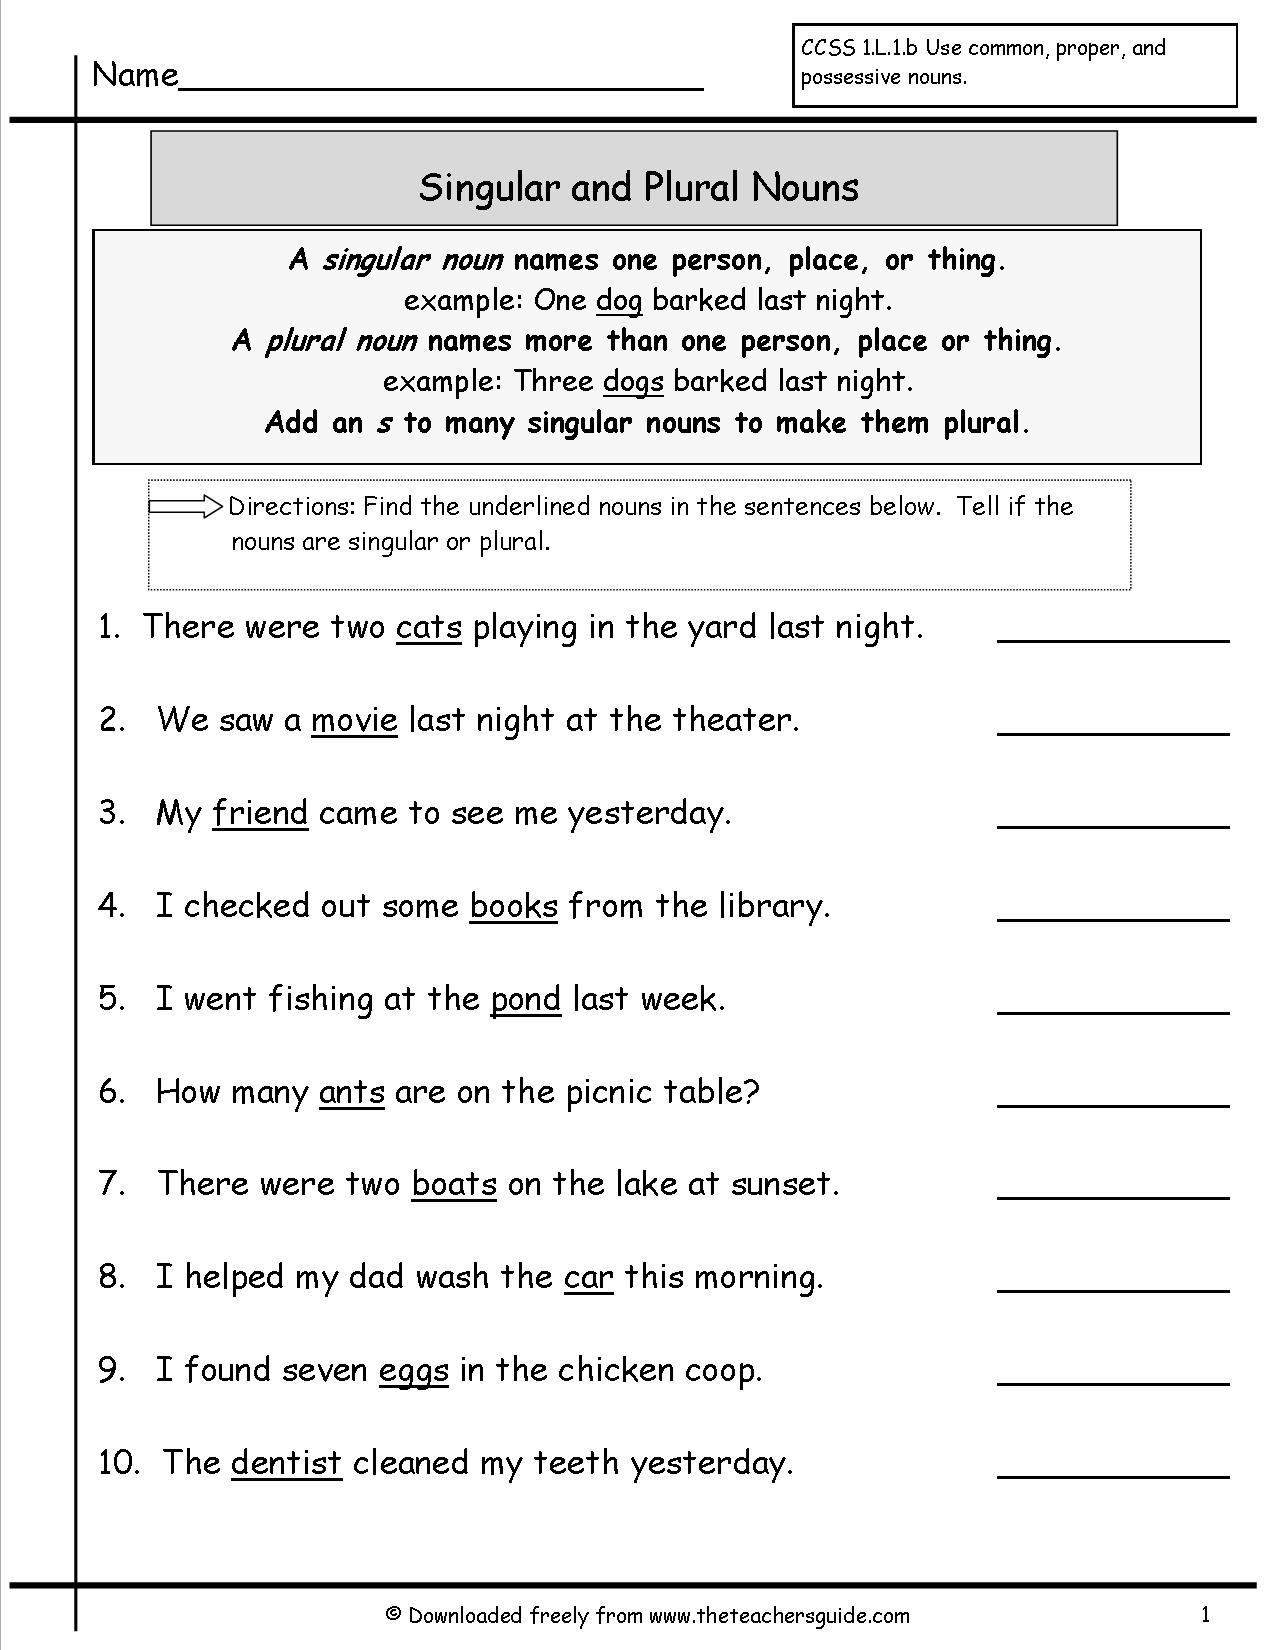 Singular Possessive Nouns Worksheet Singular and Plural Nouns Worksheets From the Teacher Guide